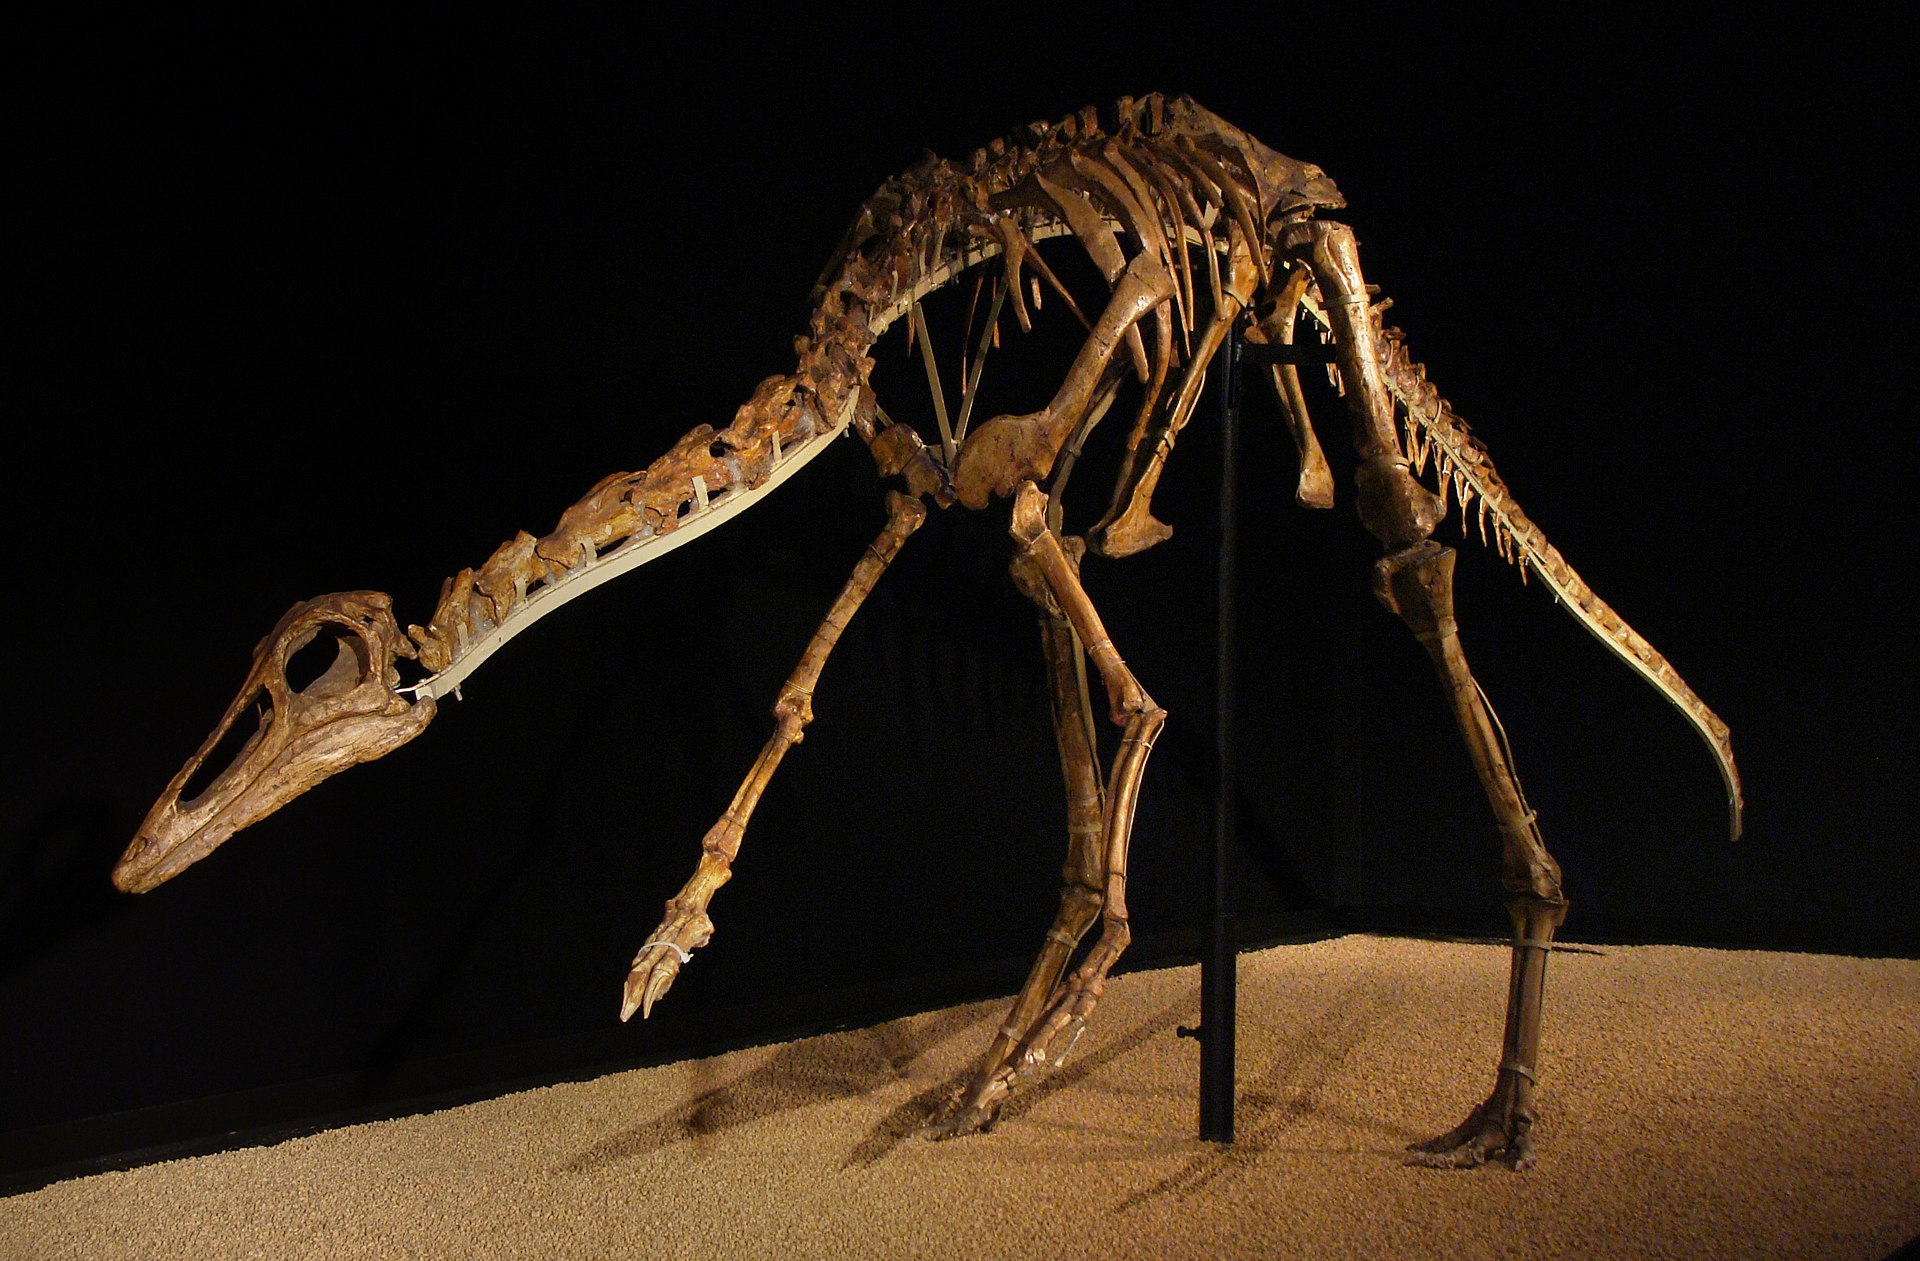 Kostry ornitomimidů, jako byl i mongolský druh Anserimimus planinychus, byly velmi lehké a pevné. Patrně všichni zástupci této čeledi teropodů dokázali běhat rychleji než nejlepší lidští sprinteři, dosahovali nejspíš rychlosti přinejmenším kolem 50 k